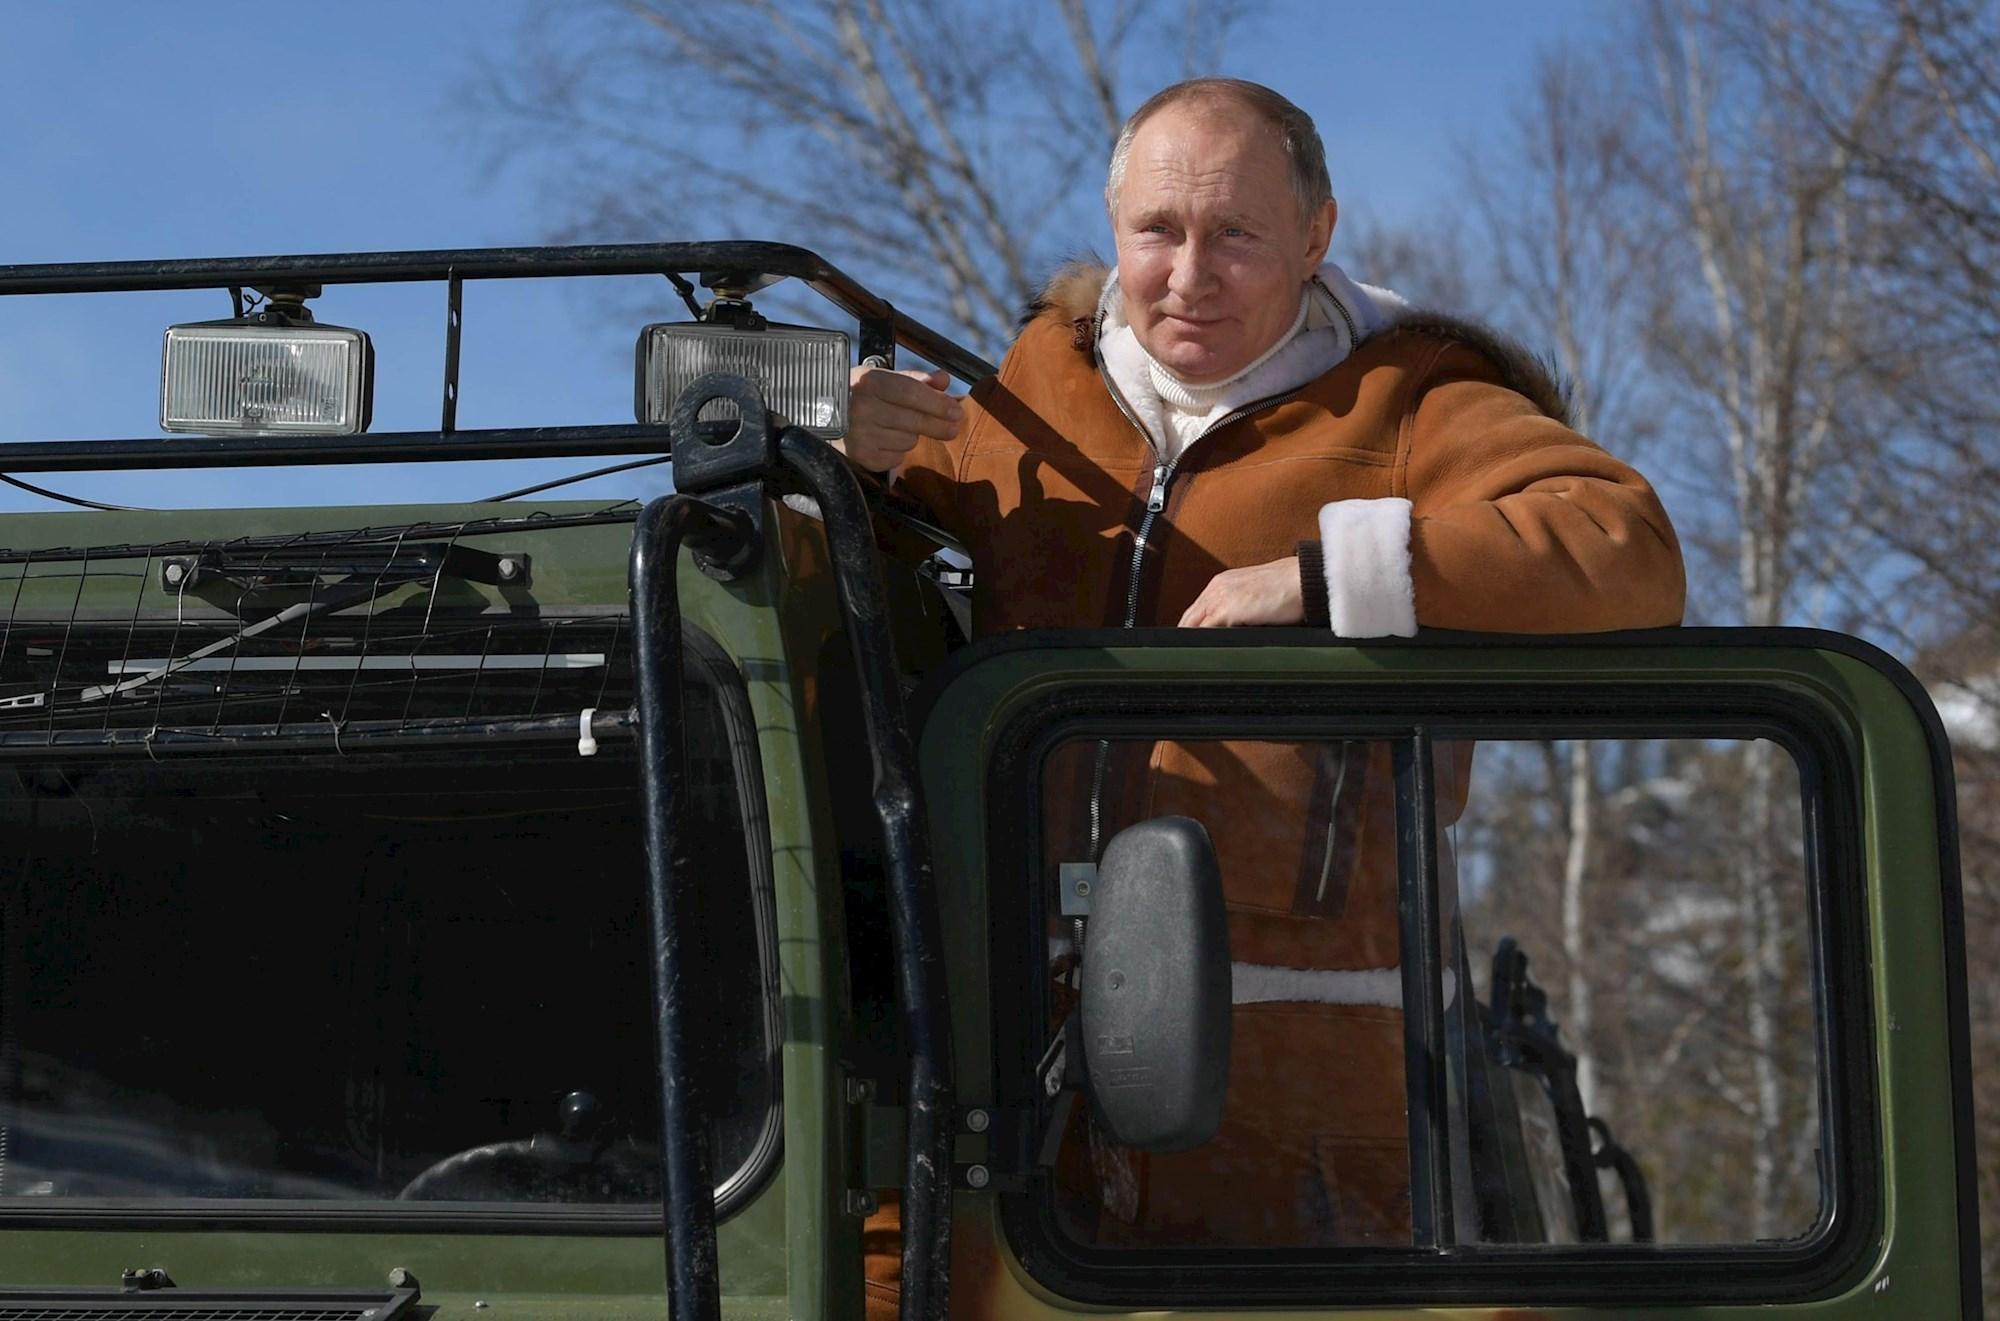 Putin vikend proveo u Sibiru s ministrom obrane: Vozili su se terencem